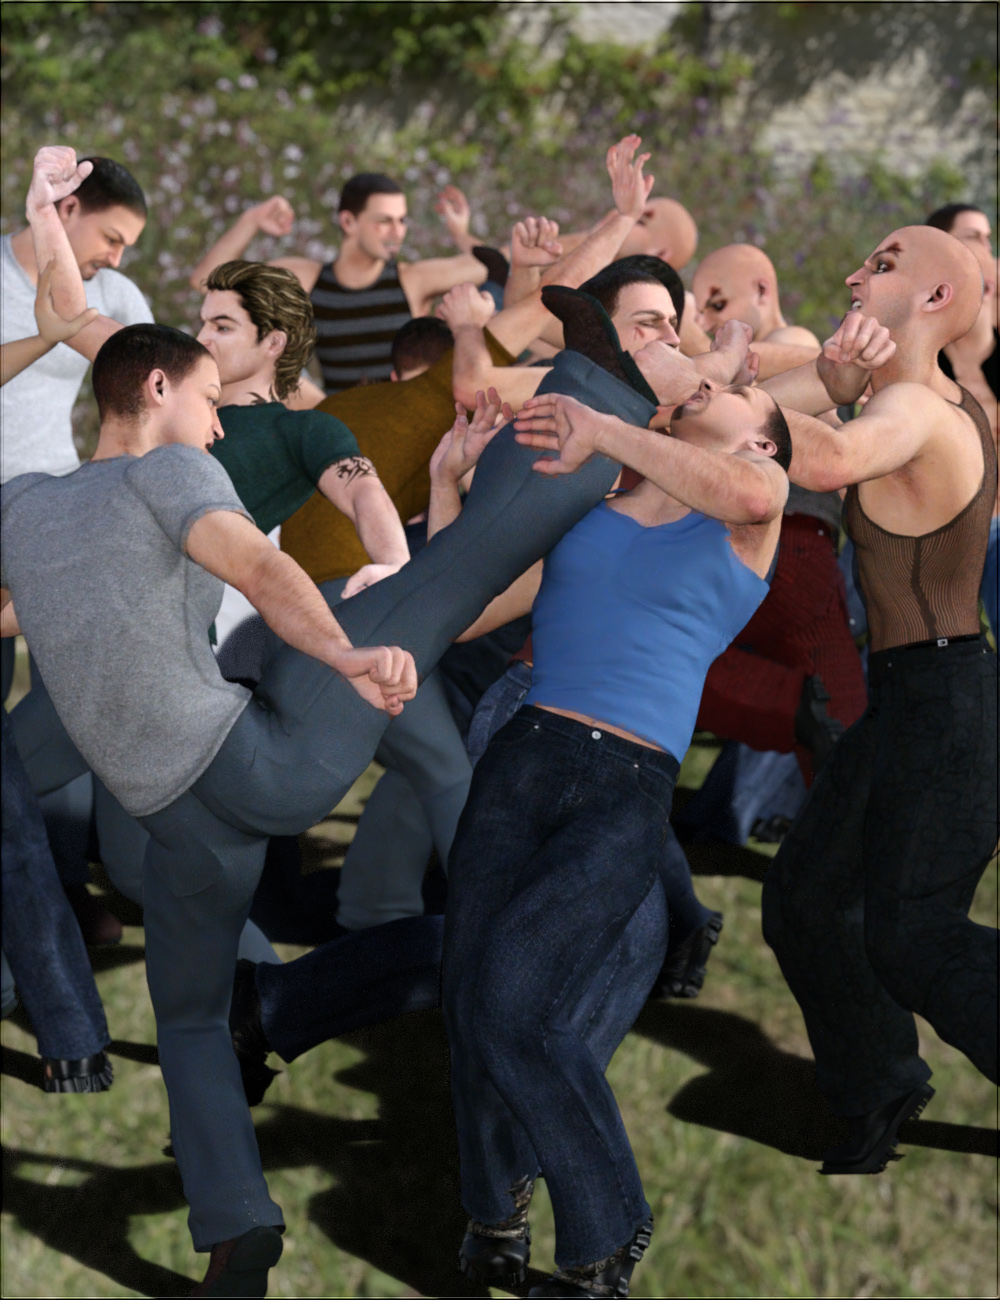 Crowd Scene - Fighting by: vyktohria, 3D Models by Daz 3D